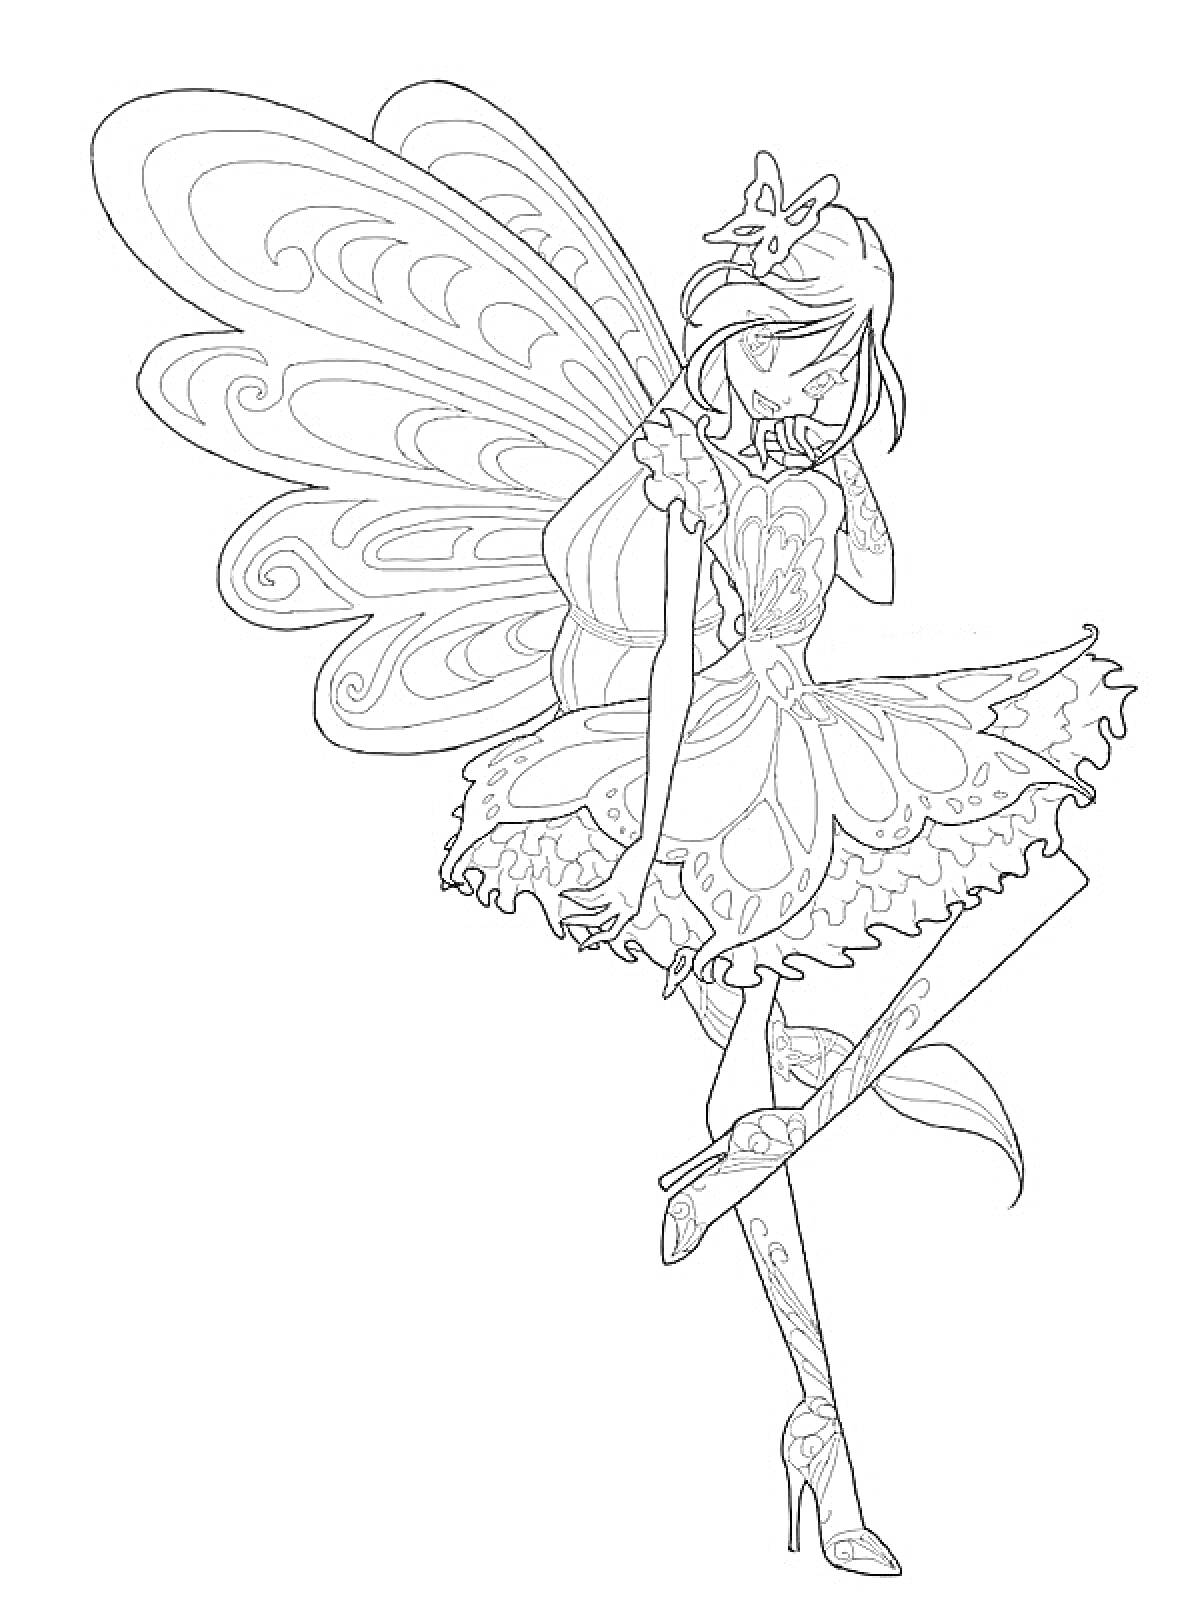 Раскраска Фея Винкс в наряде Баттерфликс с большими крыльями, стоящая в танцевальной позе